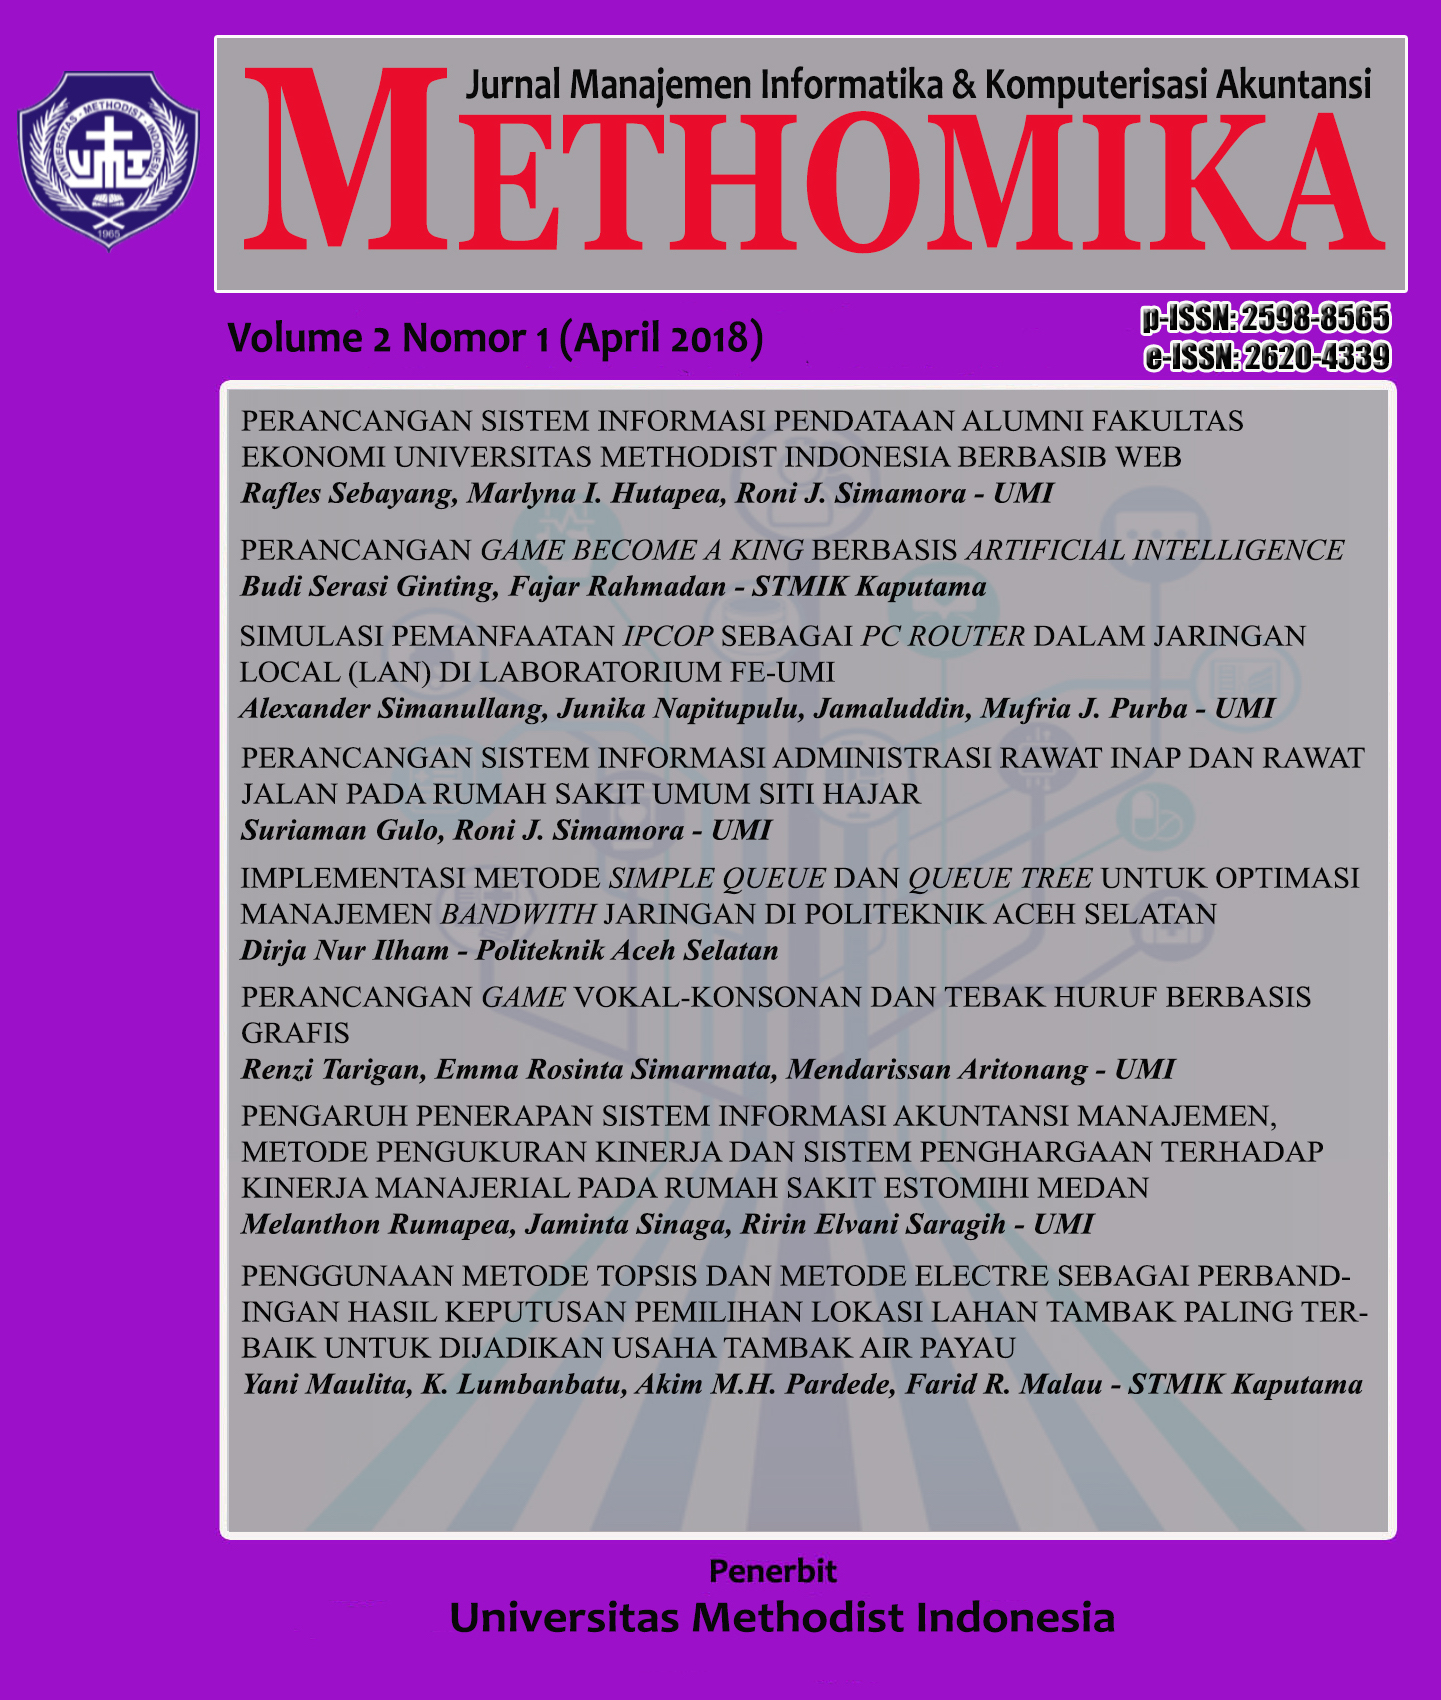 					View Vol. 2 No. 1 (2018): METHOMIKA: Jurnal Manajemen Informatika & Komputersisasi Akuntansi 
				